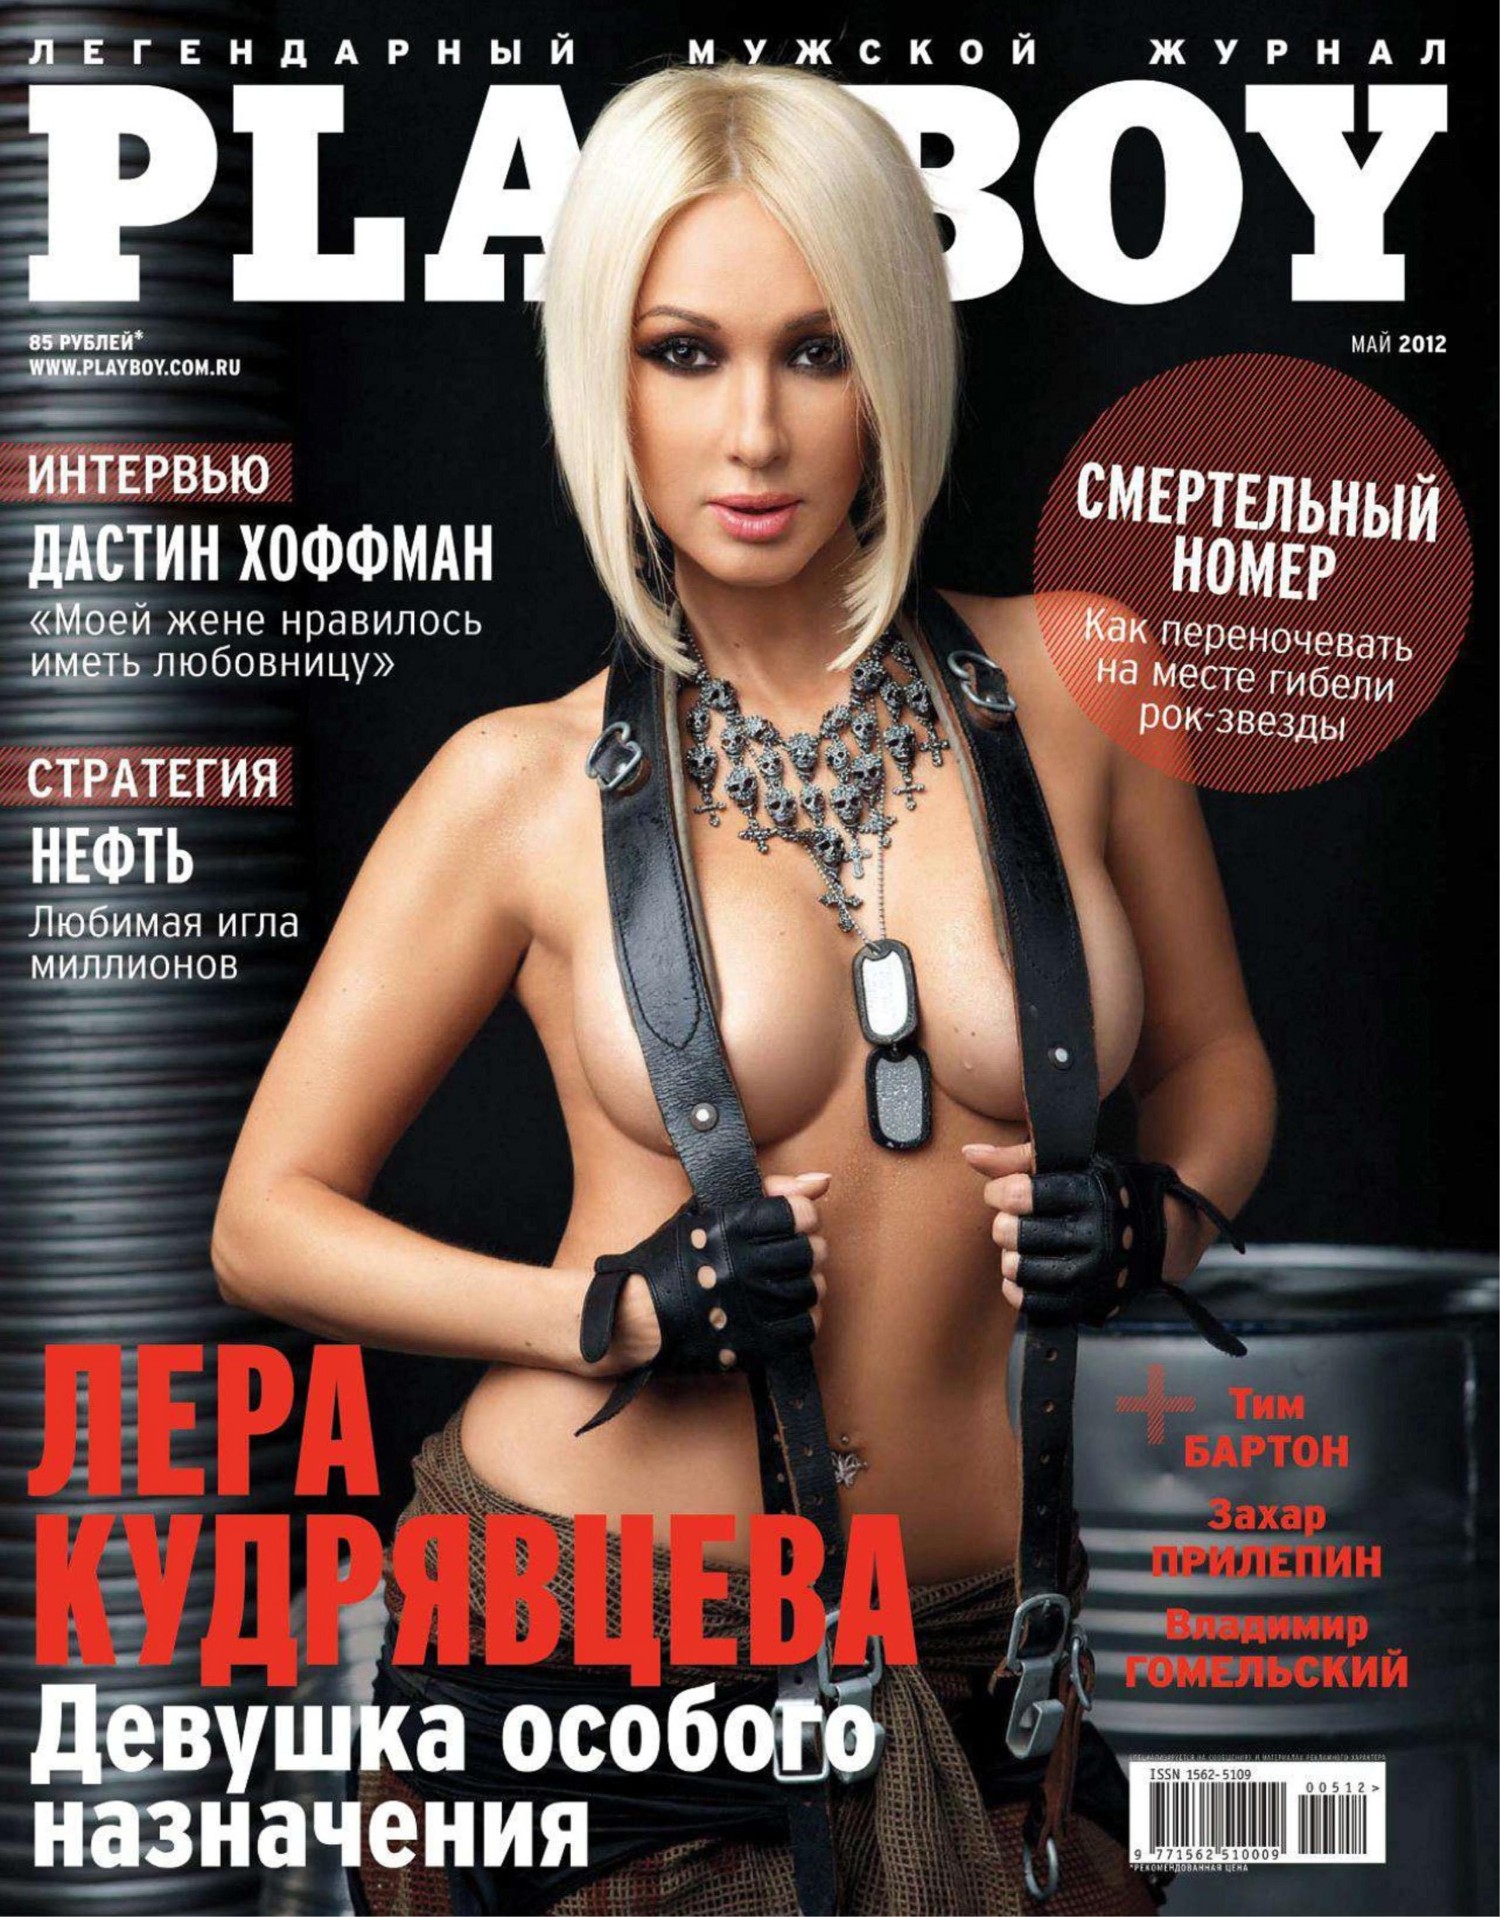 Девушки с обложки: 8 голливудских карьер моделей Playboy | Okko | Дзен